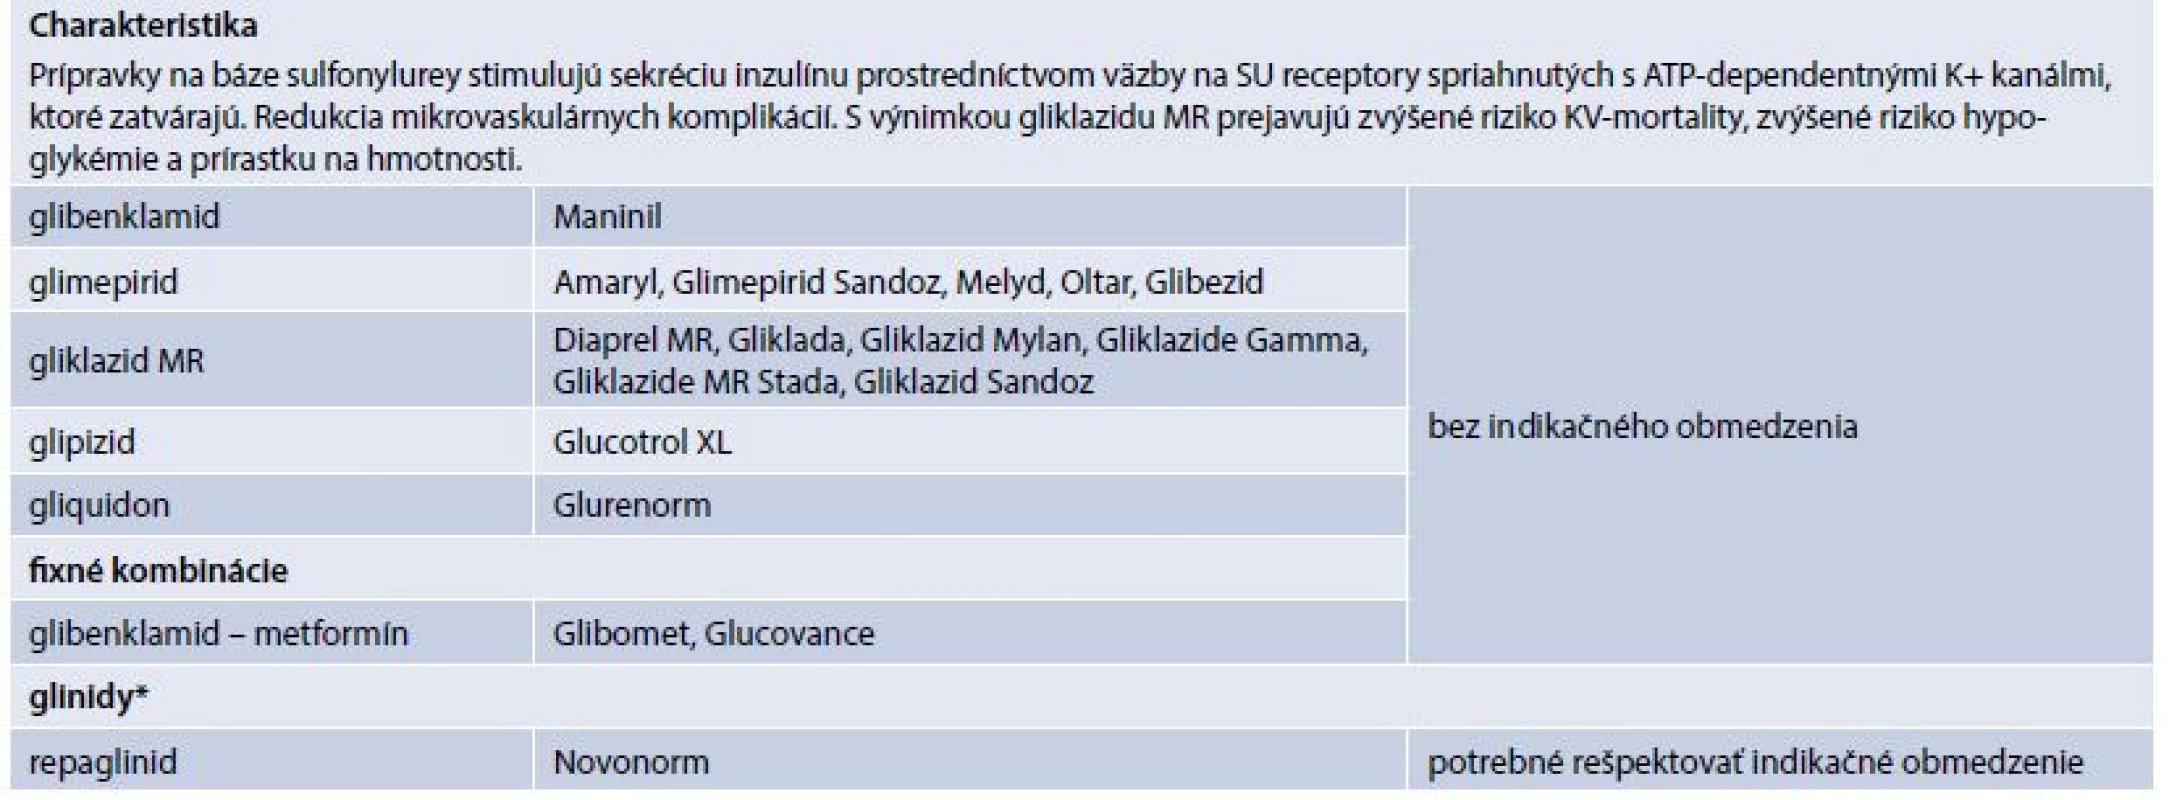 Prípravky na báze sulfonylurey a deriváty meglitinidu* (prípravky kategorizované na Slovensku)